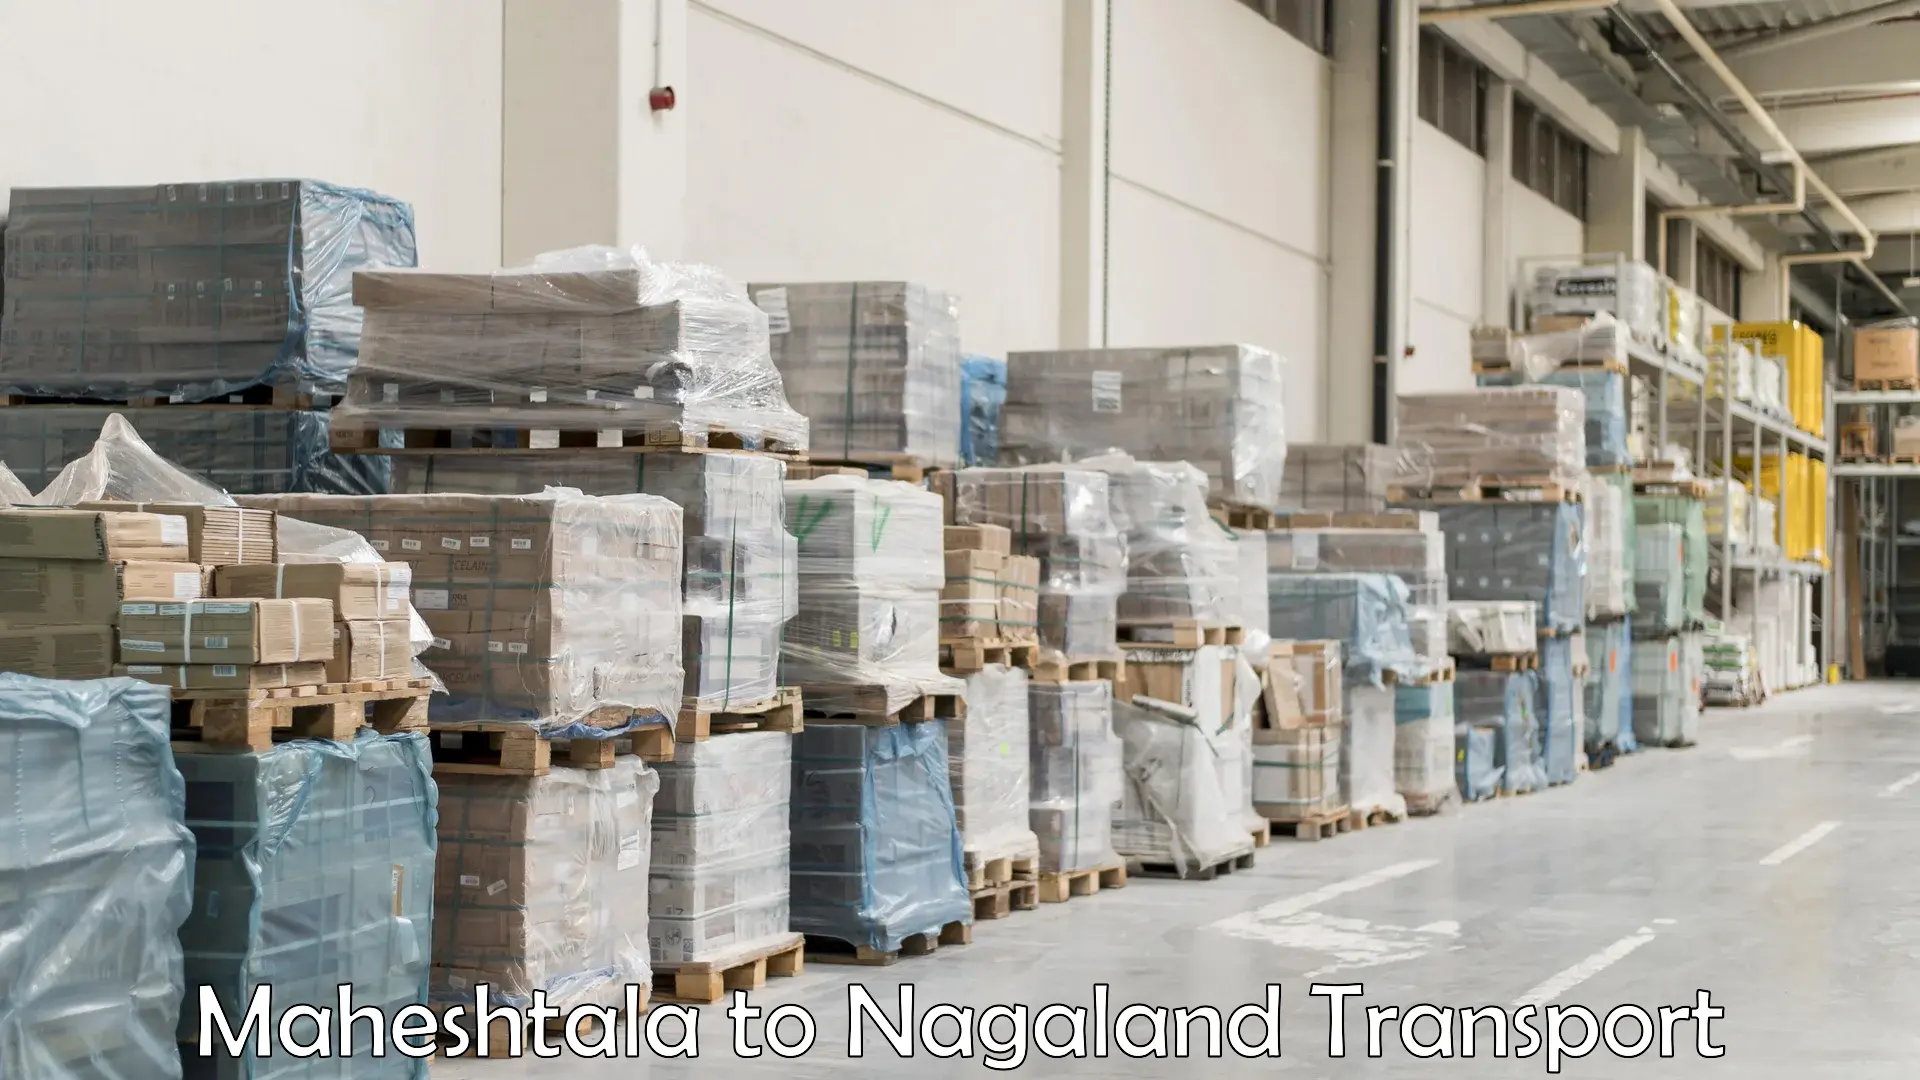 Online transport service Maheshtala to Nagaland